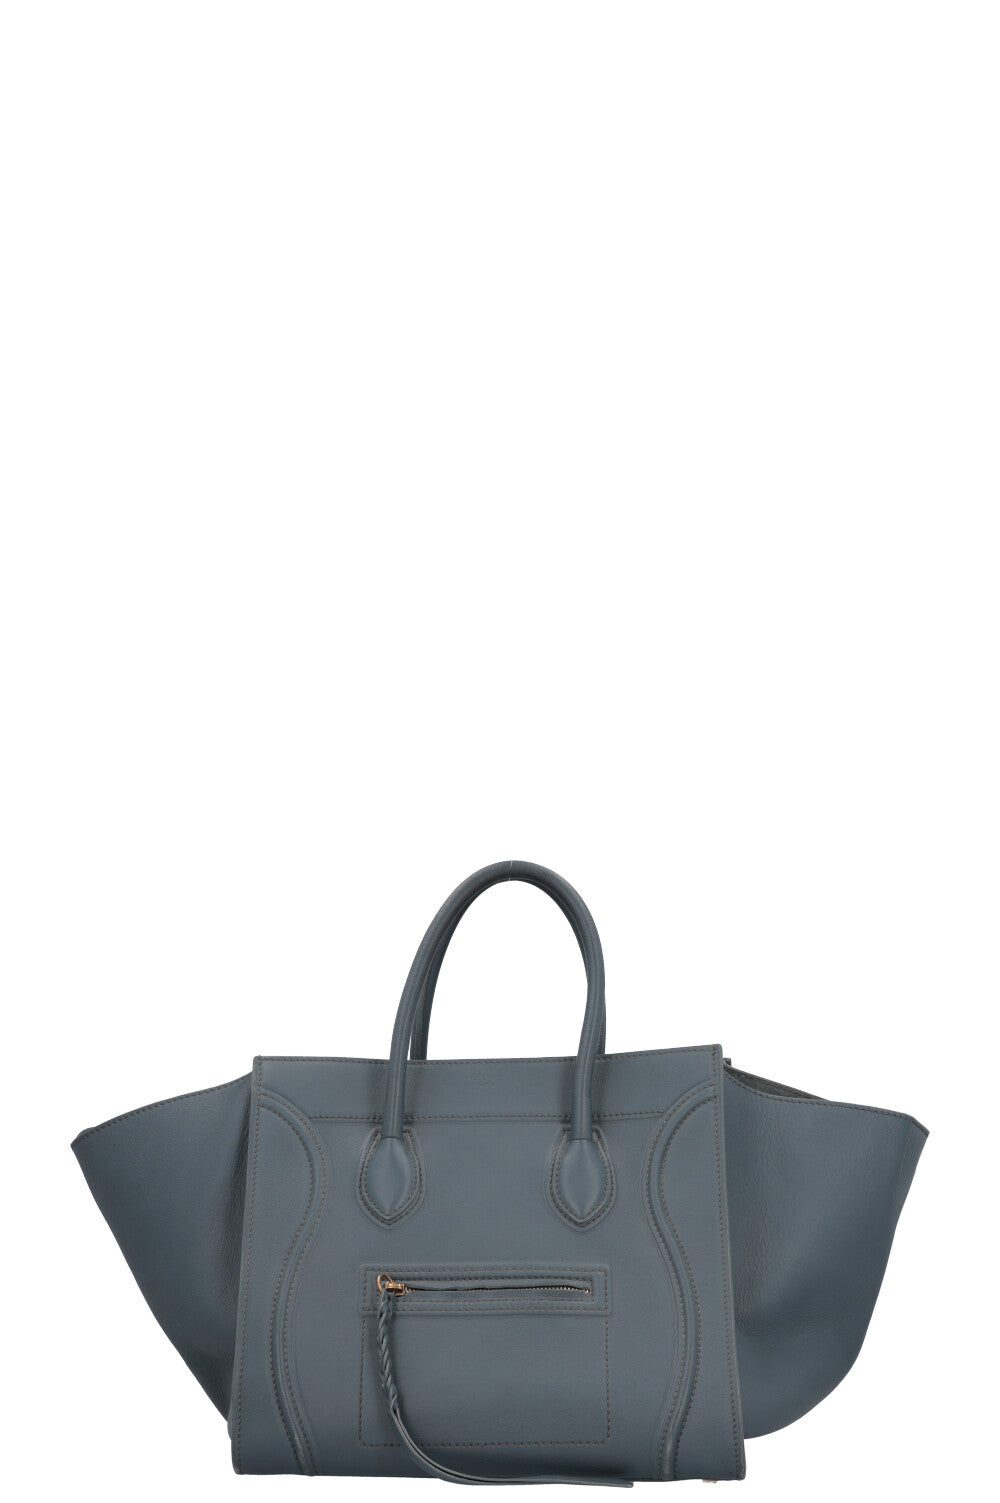 CELINE Medium Phantom Luggage Bag Leather Blue